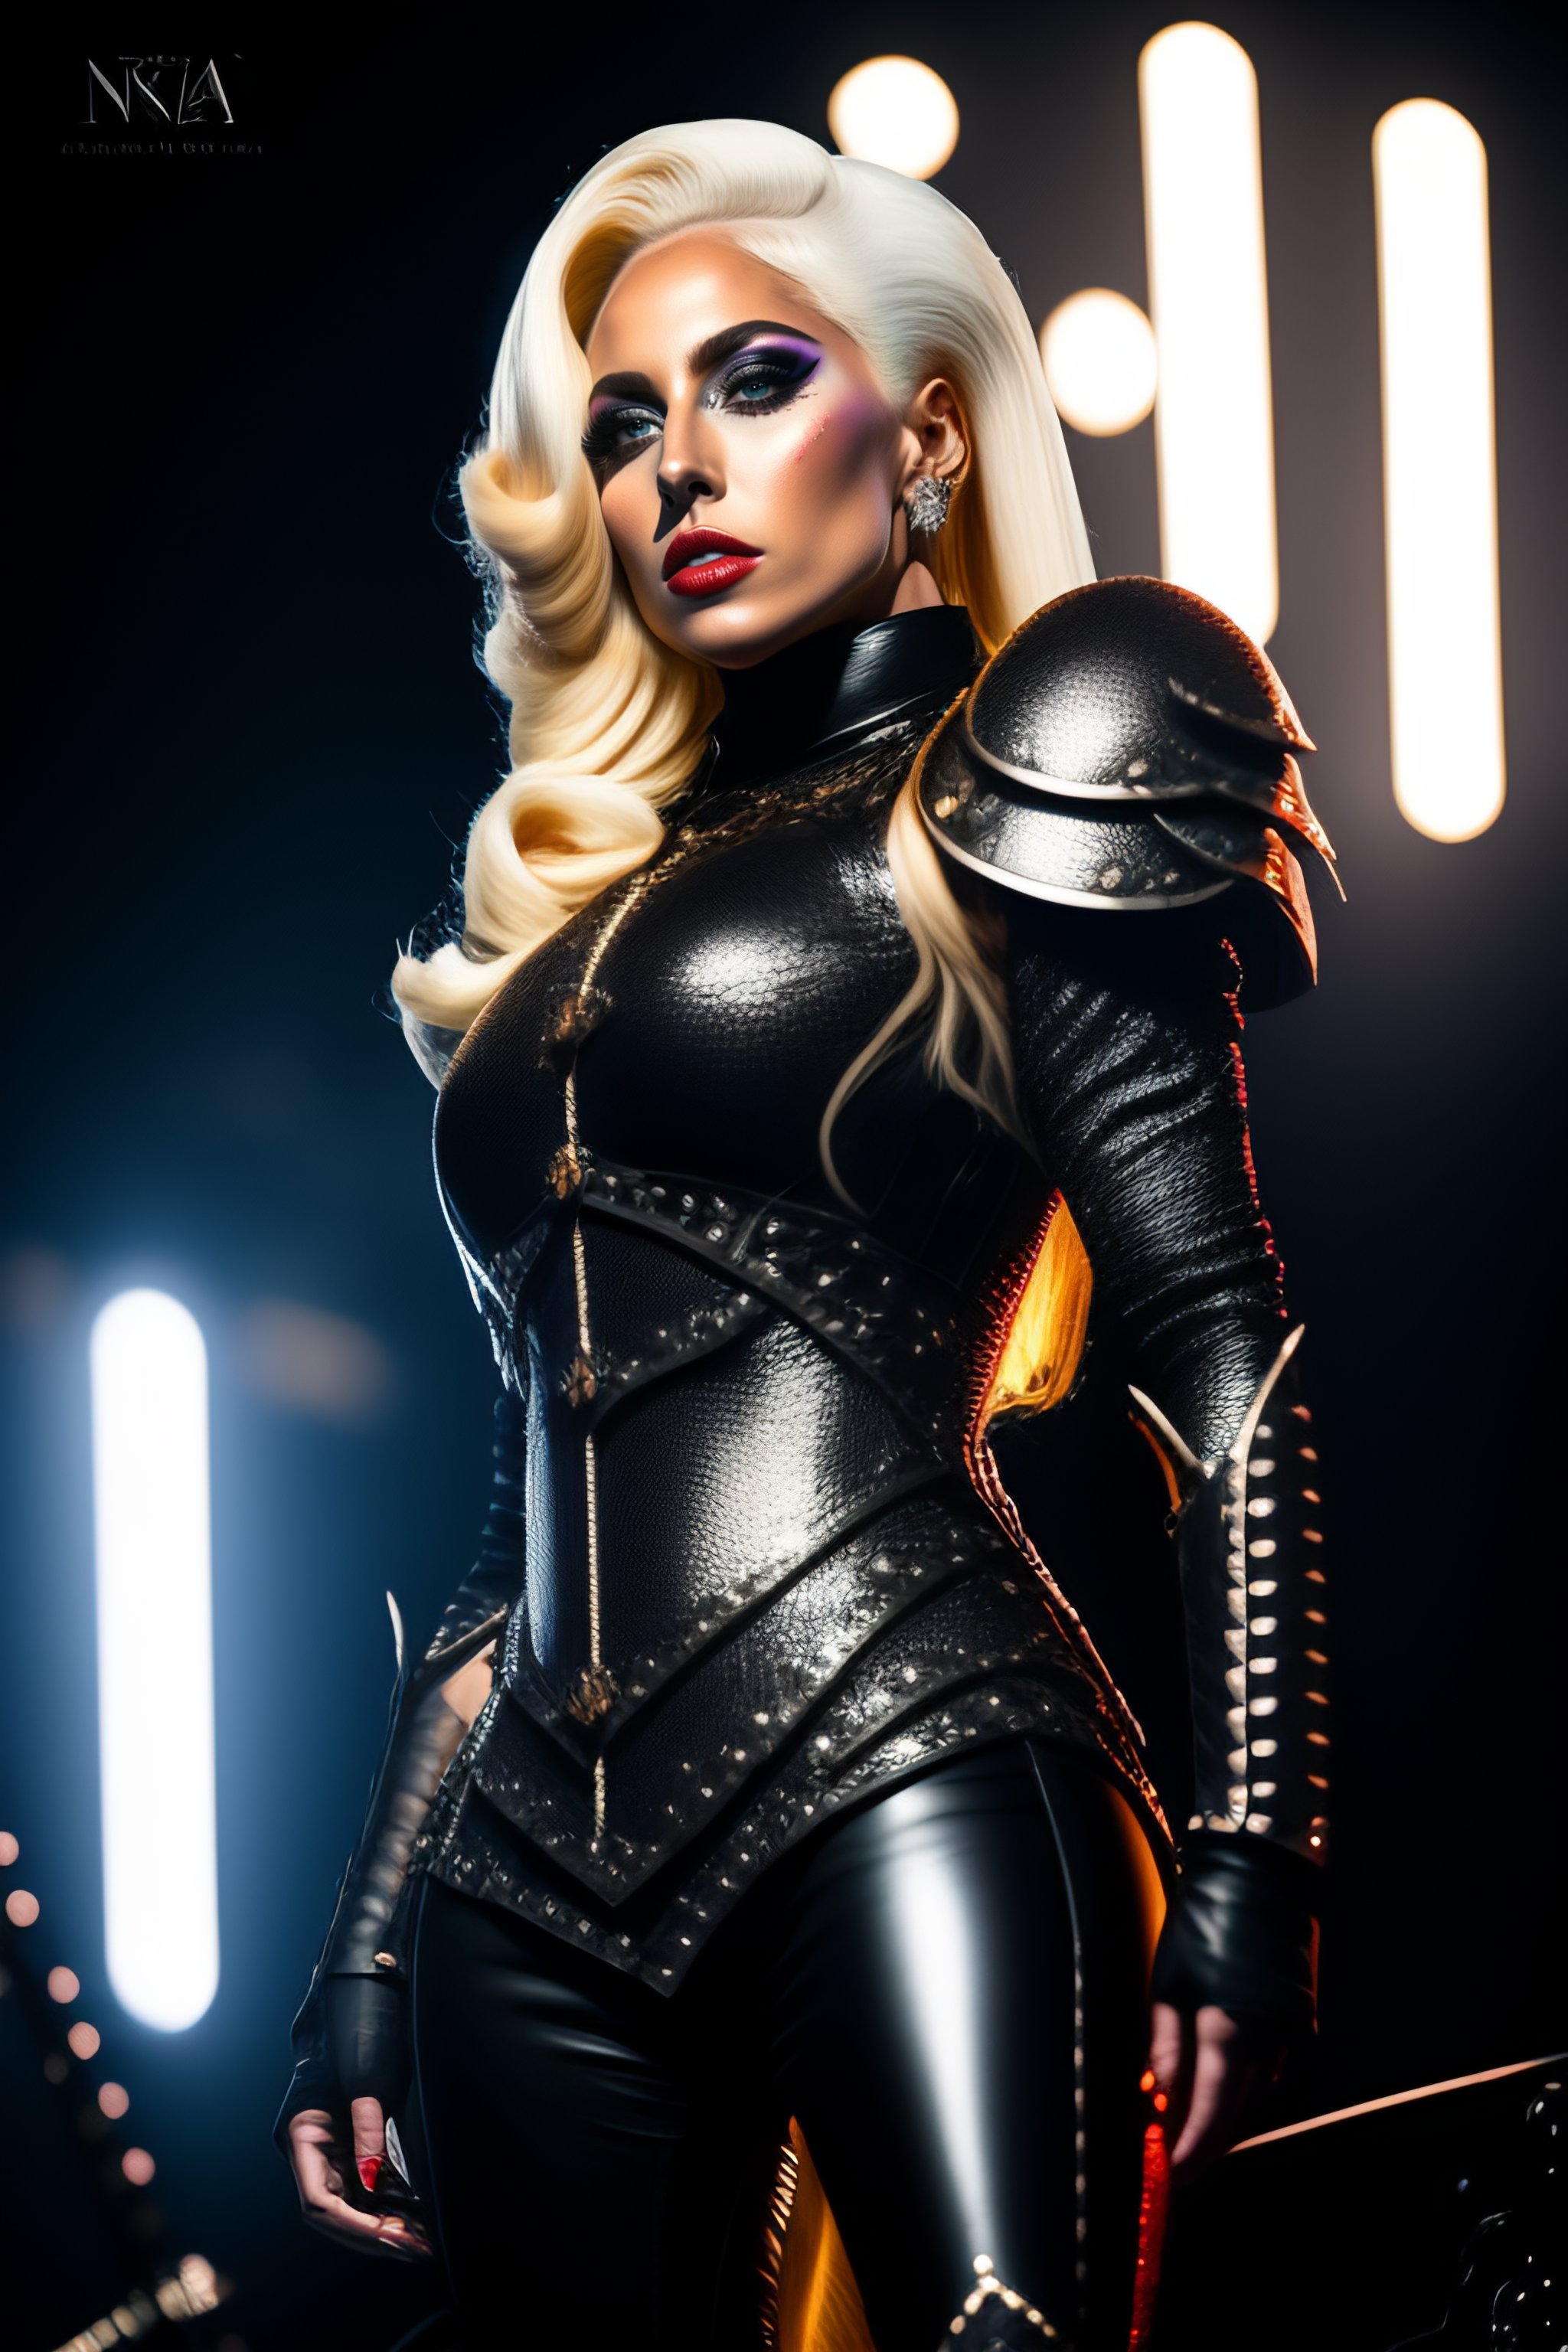 Hyper realistic Lady Gaga as a Goth Metal artist rea